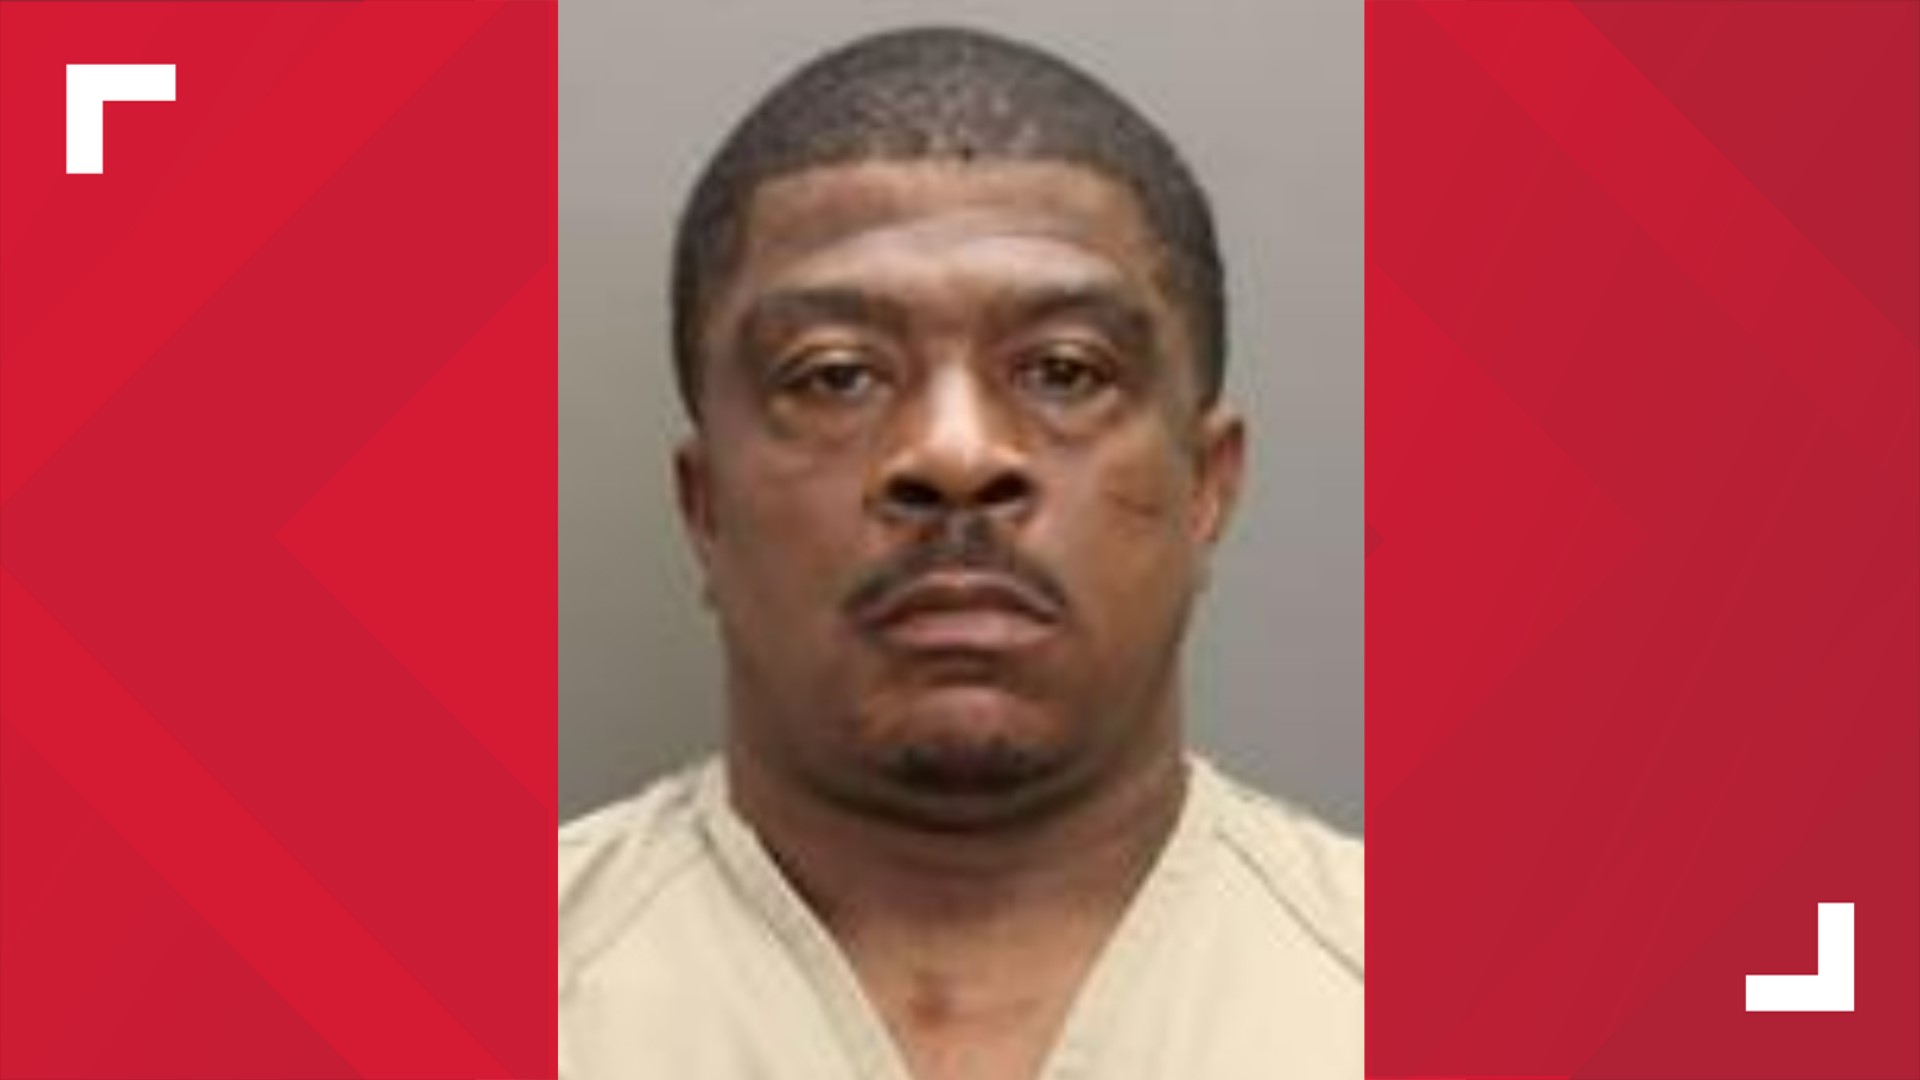 Dwann Anderson is accused of killing Tyreece Jefferson on July 21.